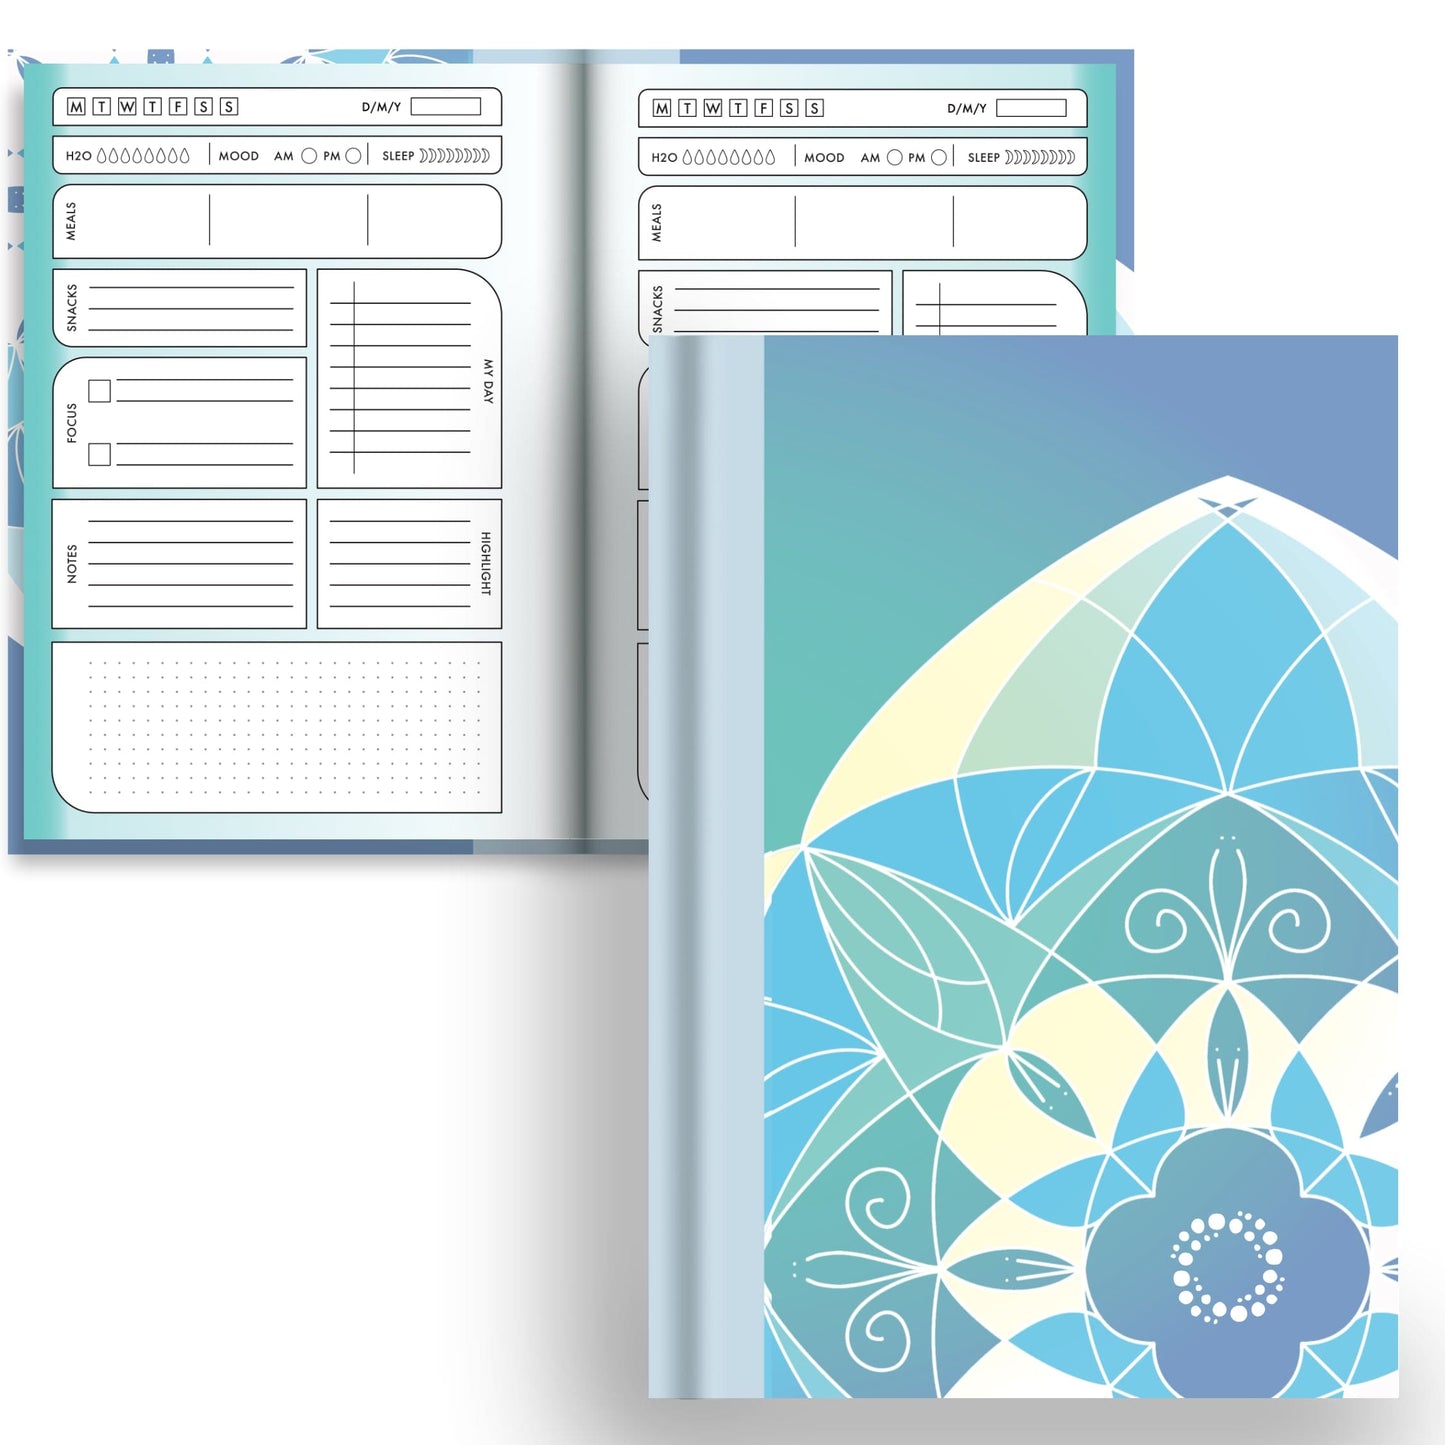 DayDot Journals A5 Hardcover Notebook Planner & Dot Reflections - A5 Hardback Notebook